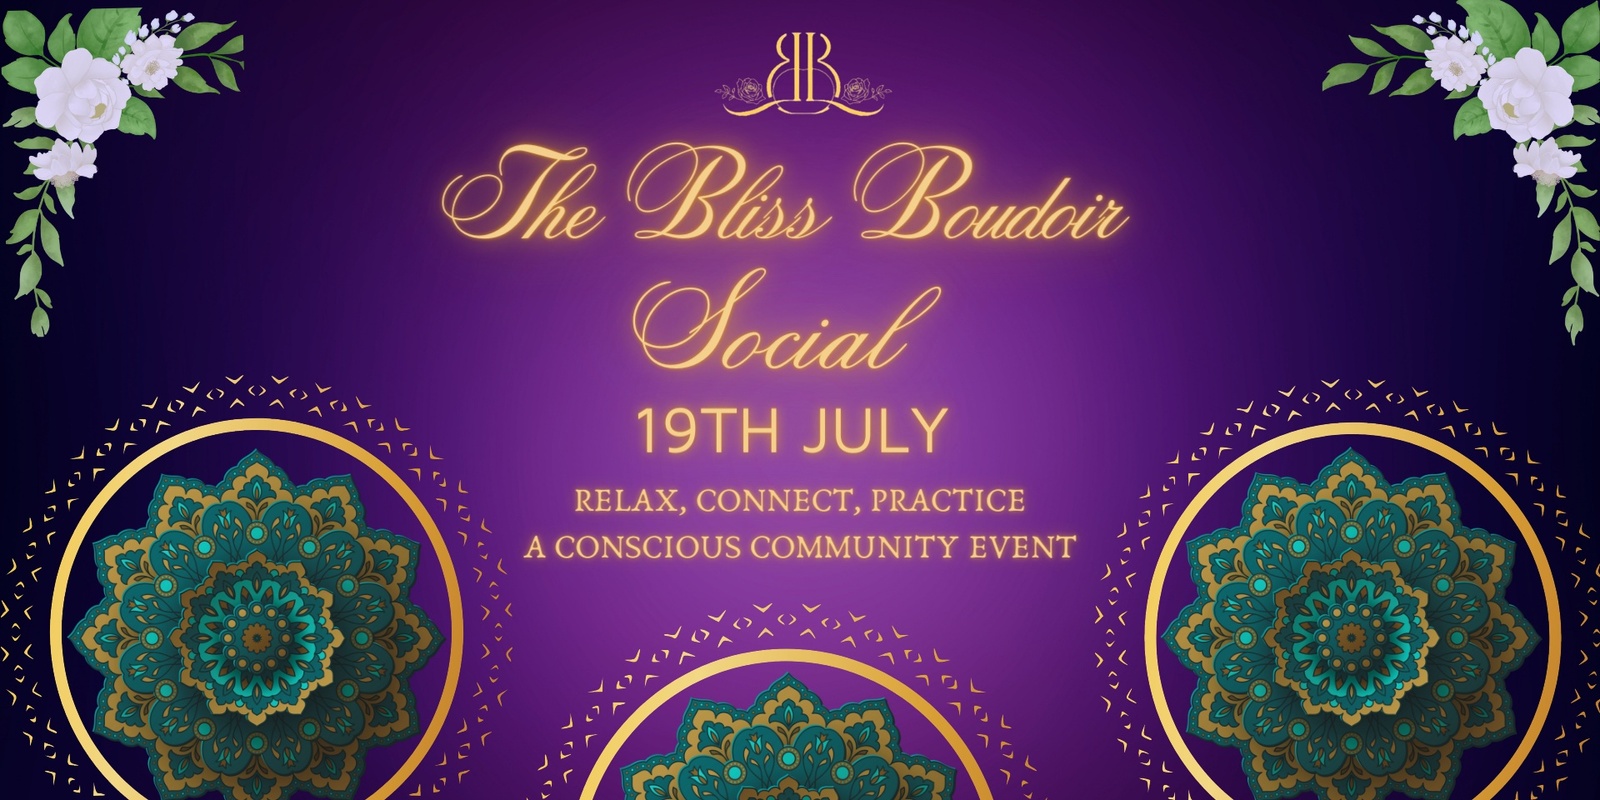 Banner image for The Bliss Boudoir Social 